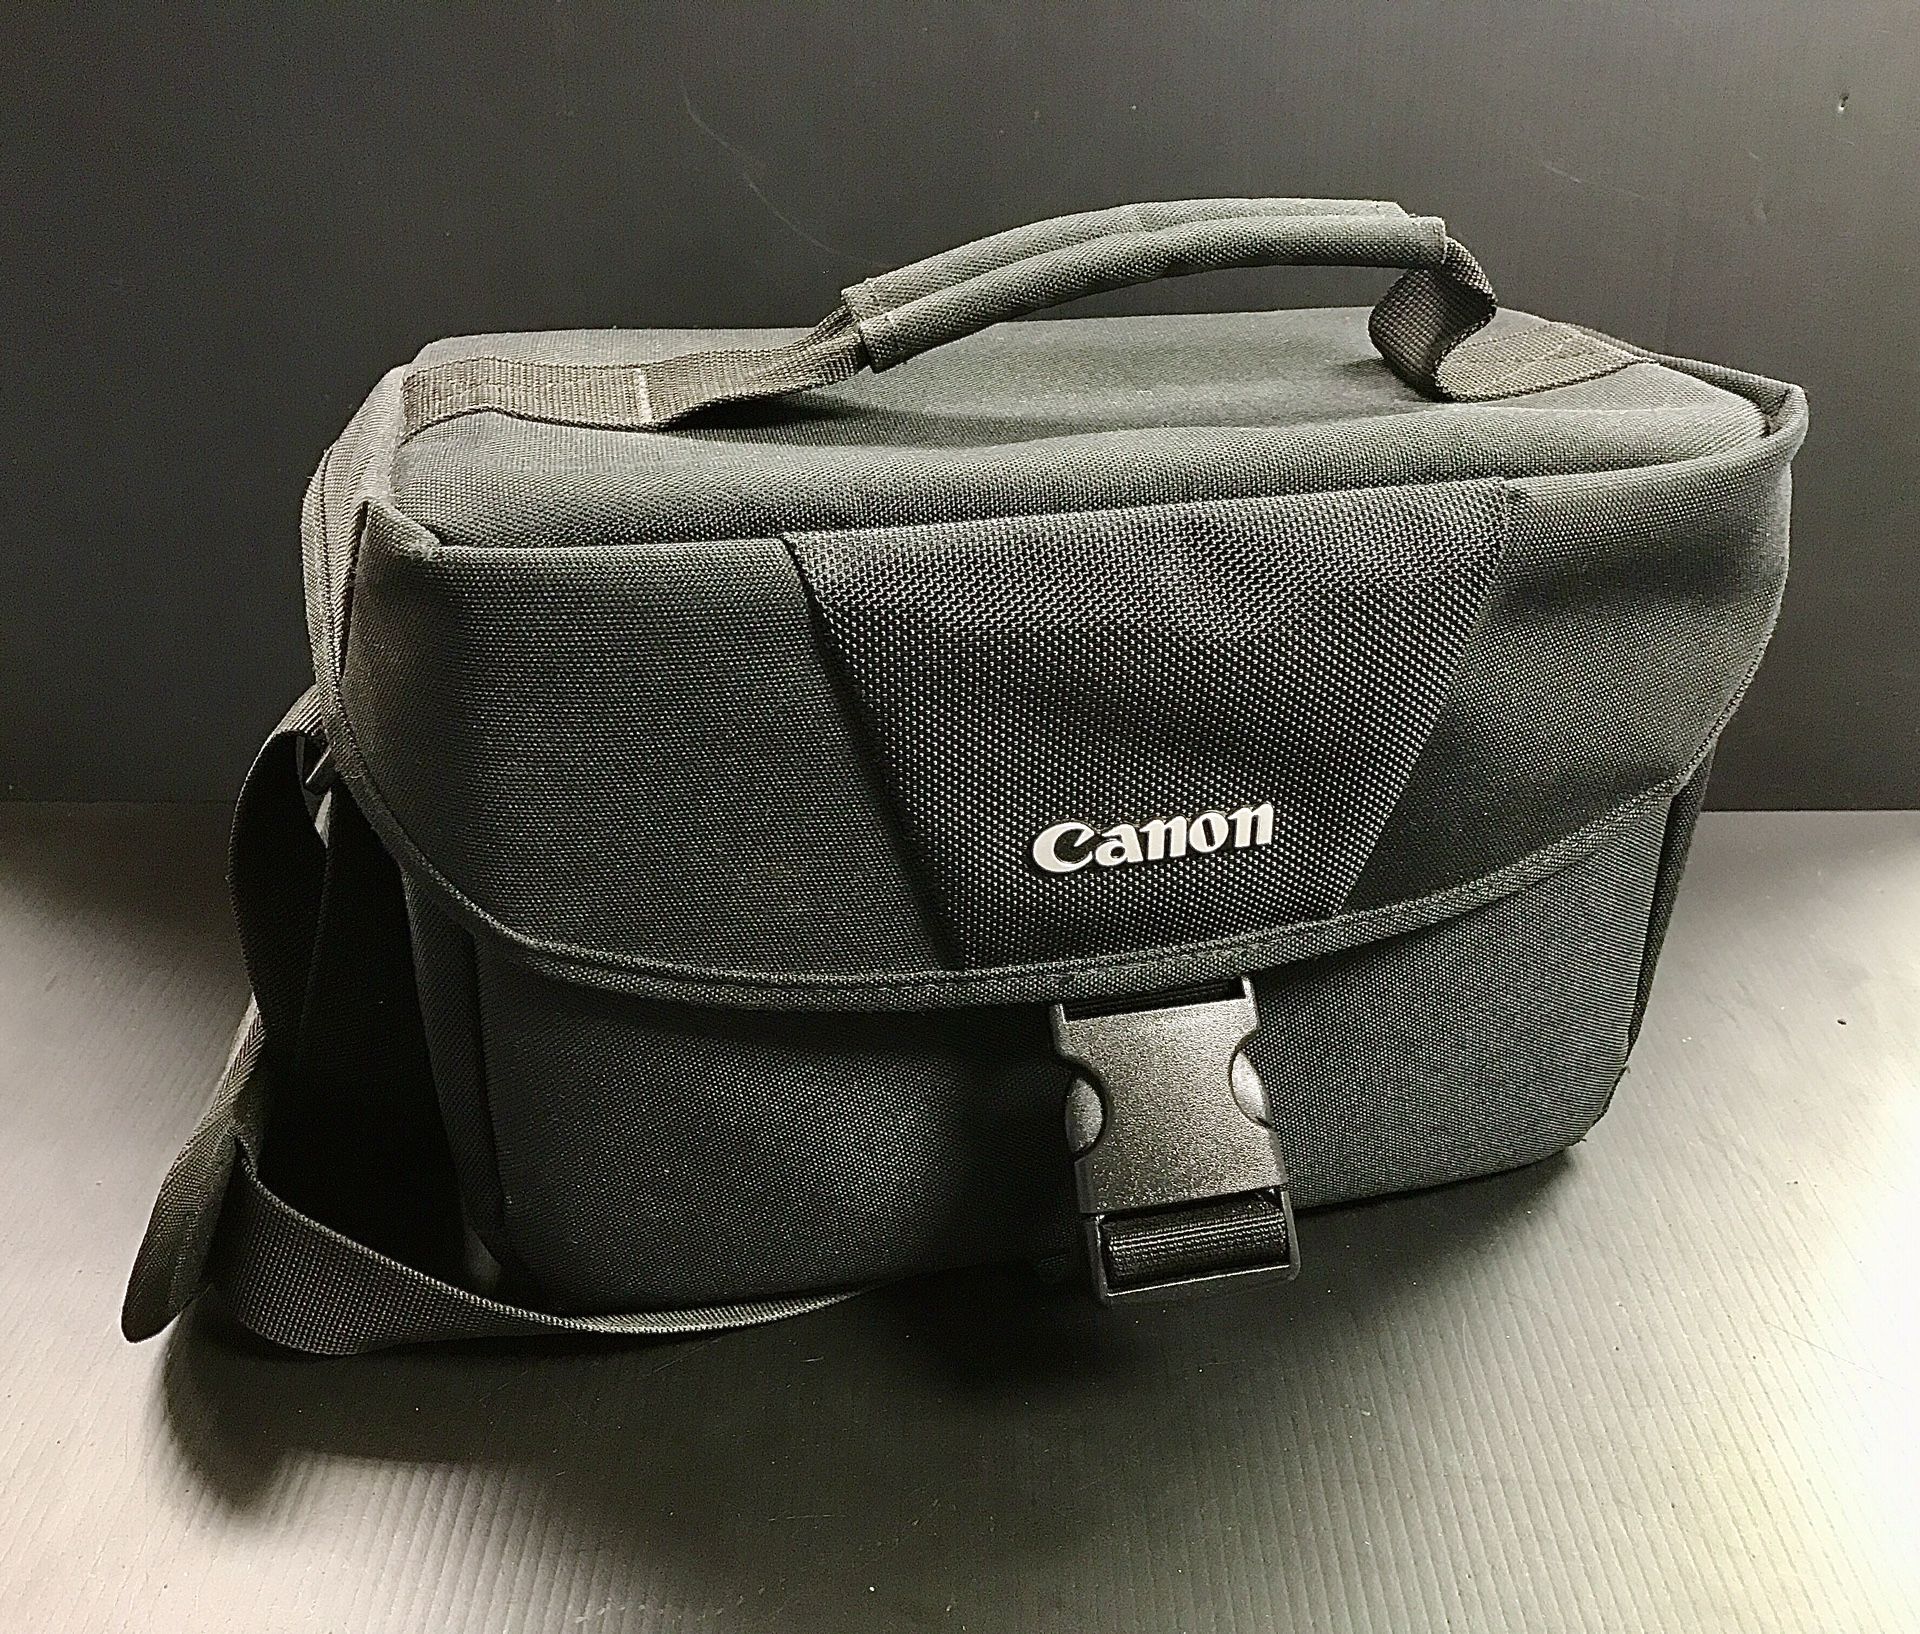 Canon Camera Bag Padded Adjustable Shoulder Strap Black 10"x8"x5"